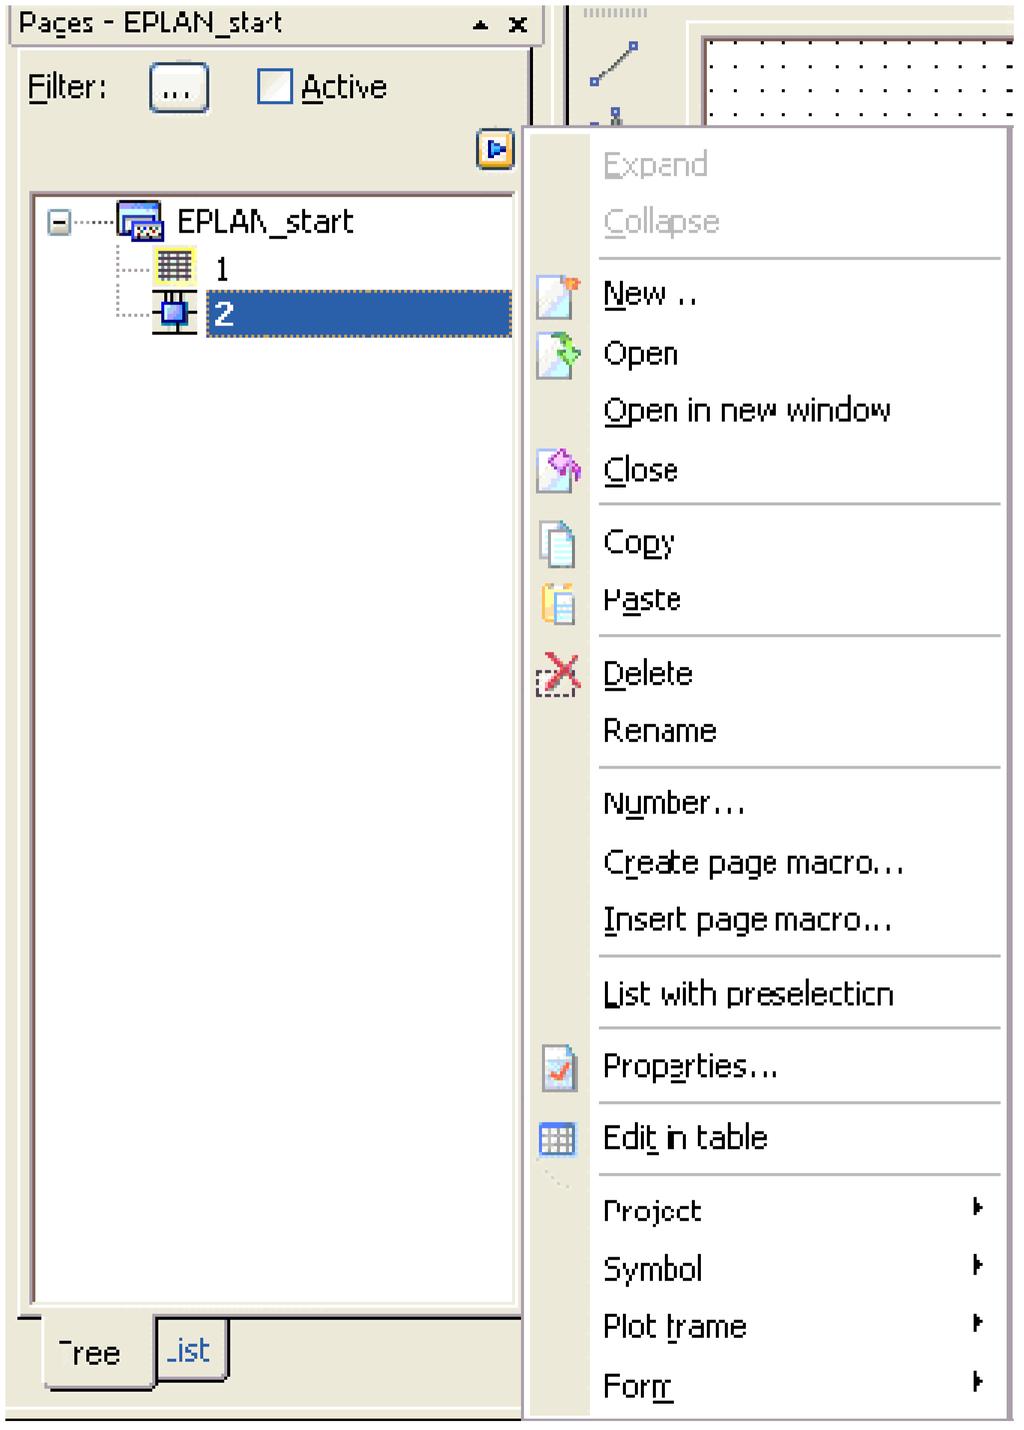 3.4. Elementi interfejsa 3.4.1. Title bar Naslovna linija, nalazi se na gornjoj ivici aplikacije i sadrži ikonicu programa sa sistemskim menijem, naziv programa i dugmad za kontrolu veličine prozora.